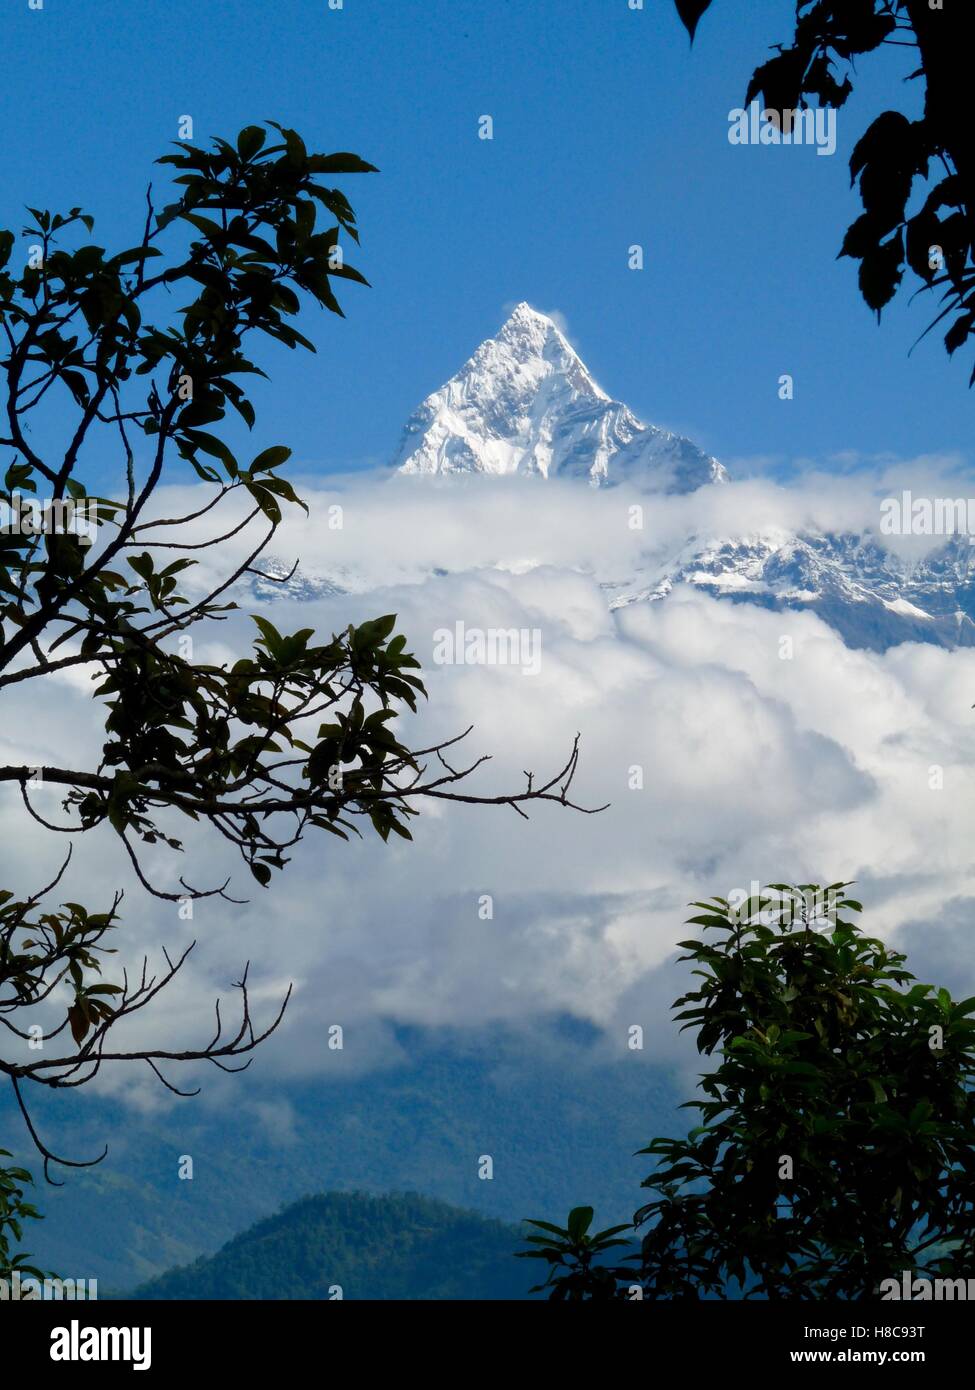 Format im Hochformat der Fishtail verschneiten im Annapurna Range, Himalaya, Nepal, klaren, blauen Himmel, umrahmt von Bäumen Stockfoto